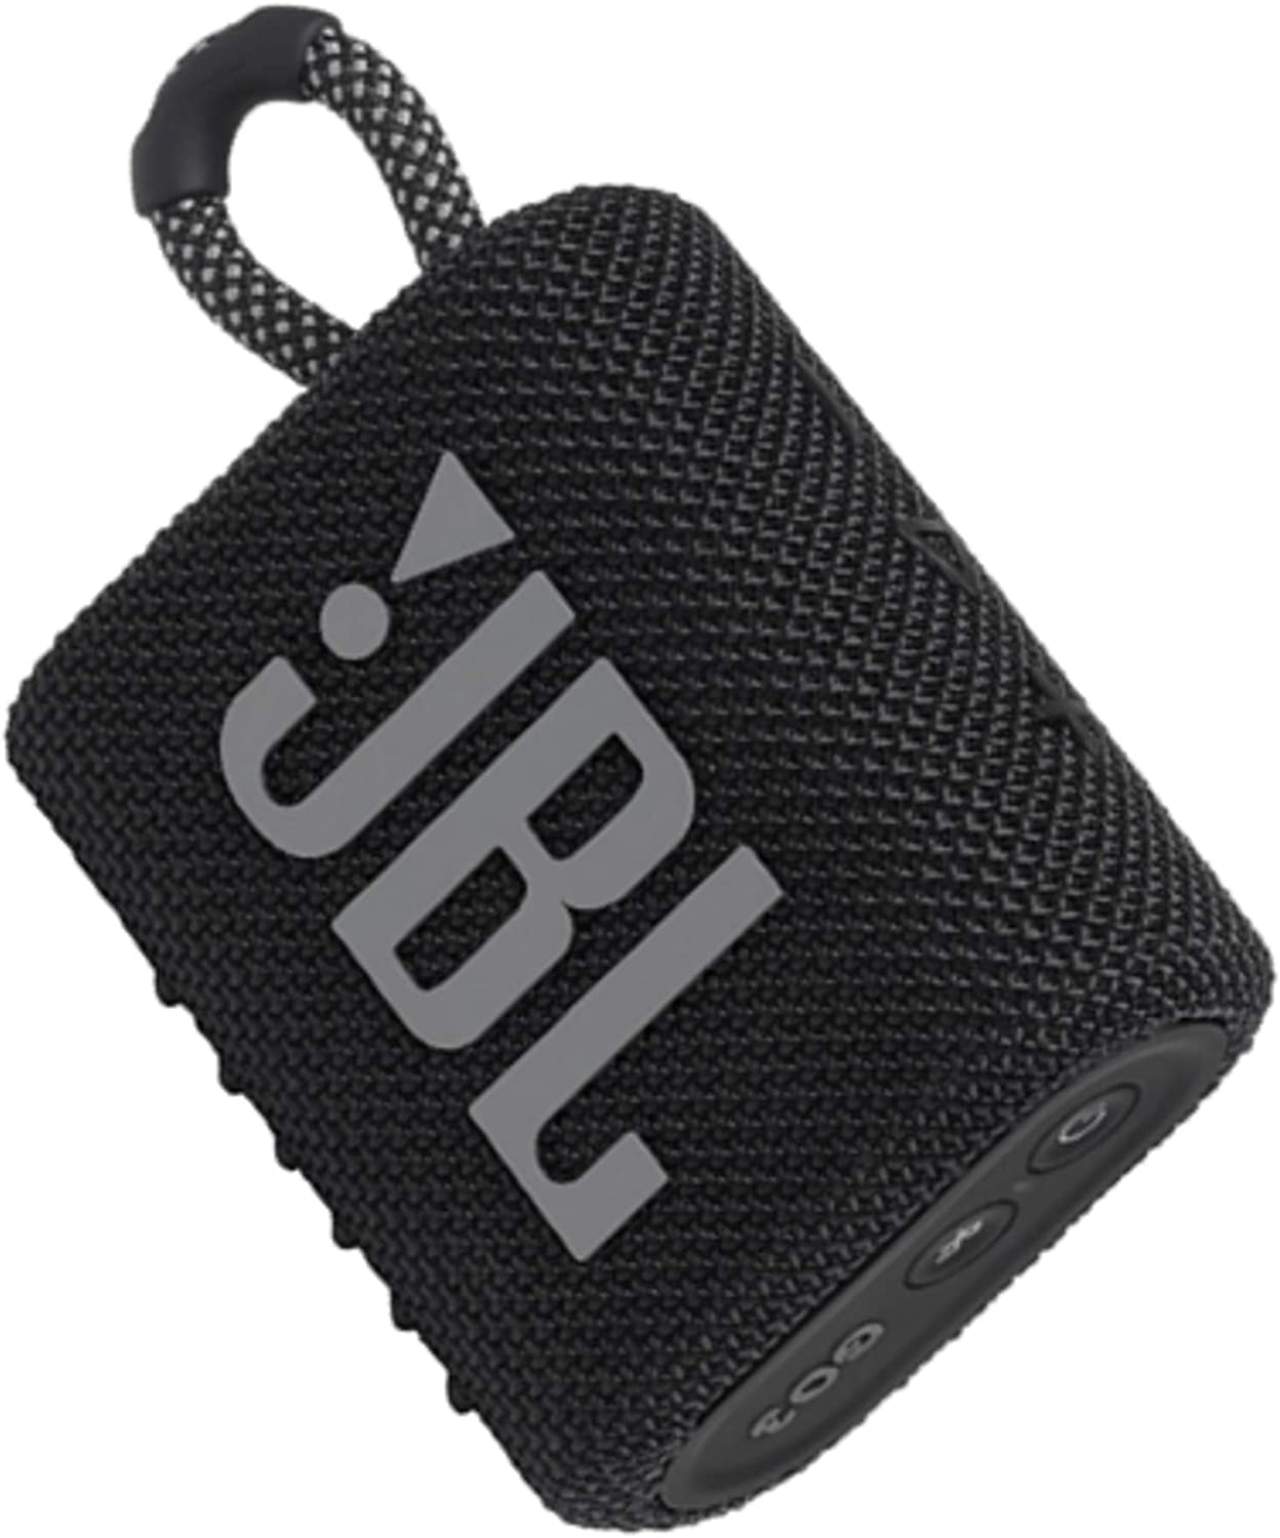 La cassa portatile Bluetooth JBL Go 3